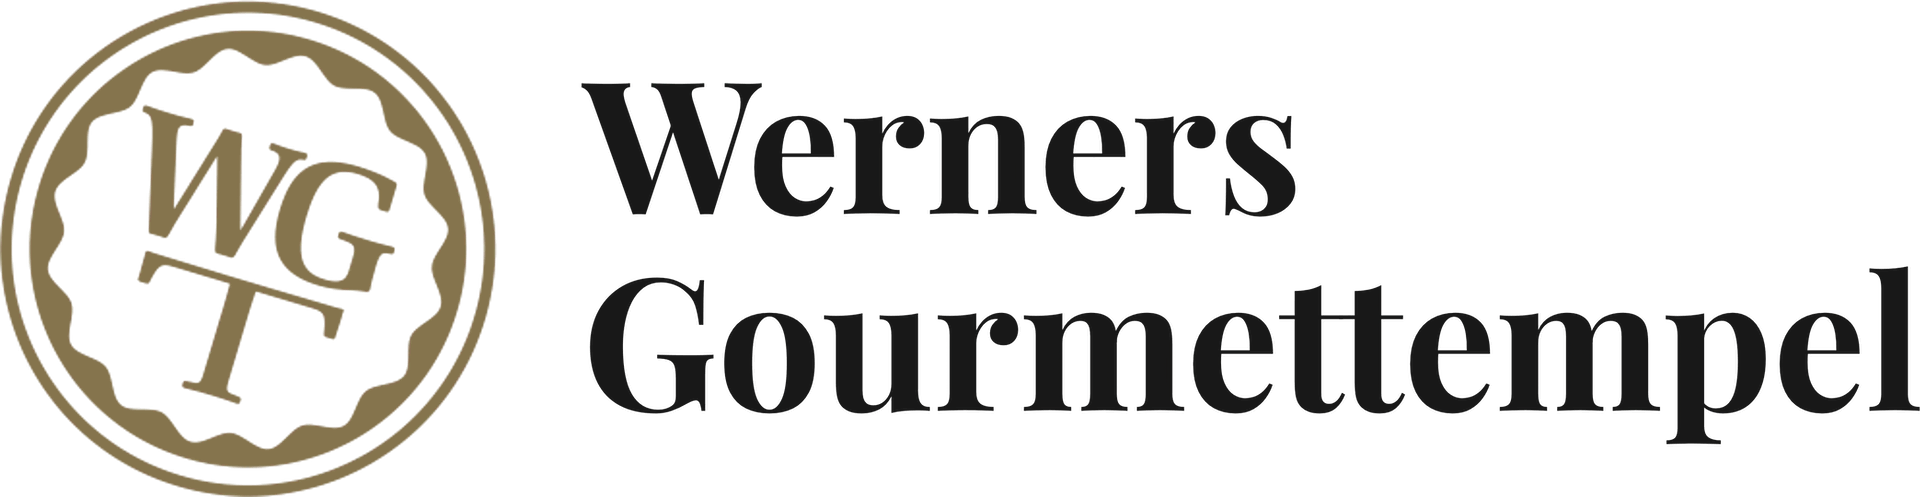 Logo von Werners Gourmettempel